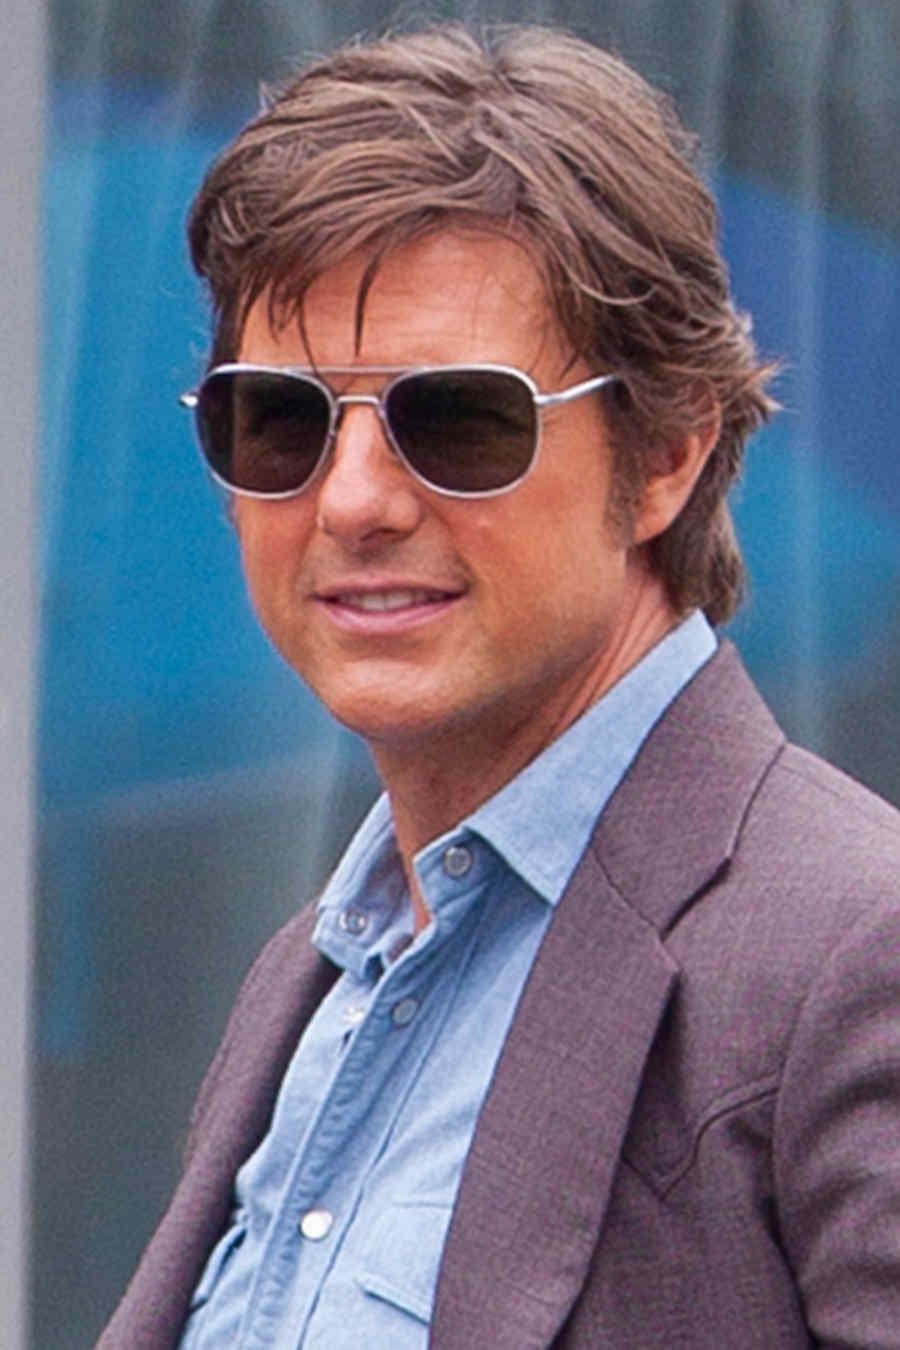 El nuevo look “retro” de Tom Cruise